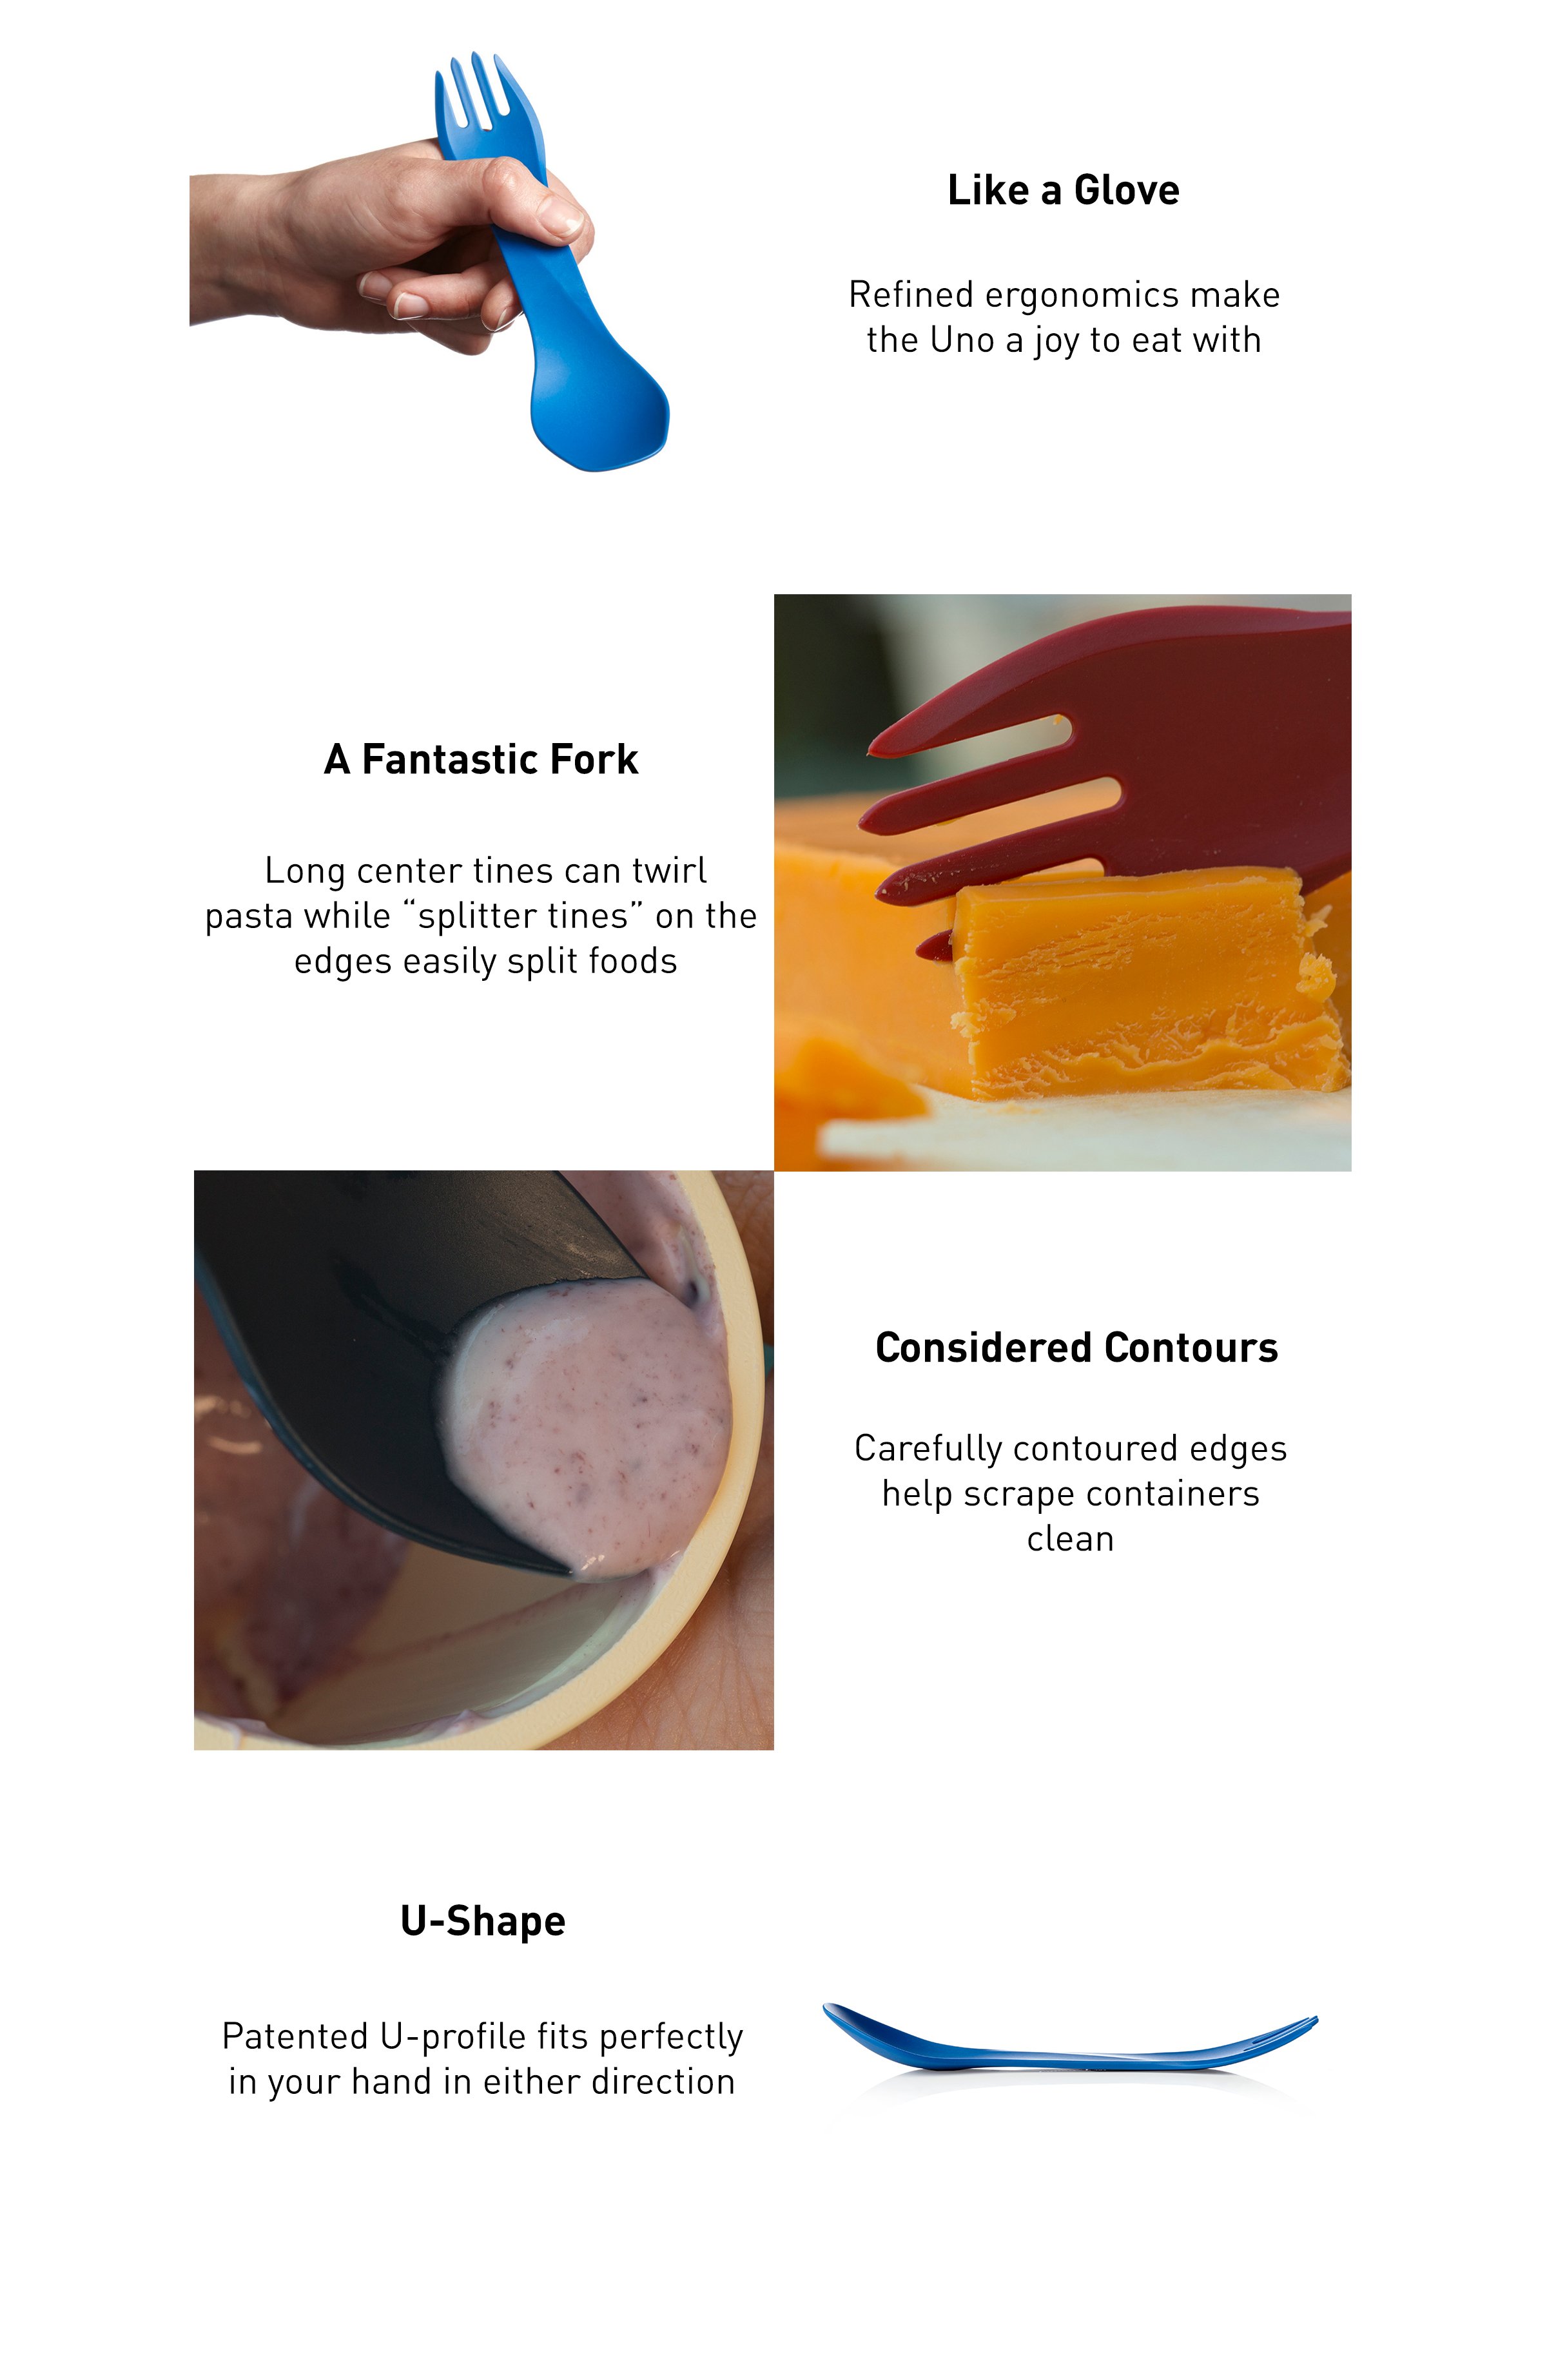 Bild eines blauen Uno in einer Hand, das zeigt, wie ergonomisch er ist. Das Bild eines Uno, der Käse schneidet, zeigt die Spaltzinken. Bild eines Löffels, der eine konturierte Kante verwendet, um einen Behälter abzuschaben. Das Bild eines uno von der Seite zeigt die U-Form für beide Hände.